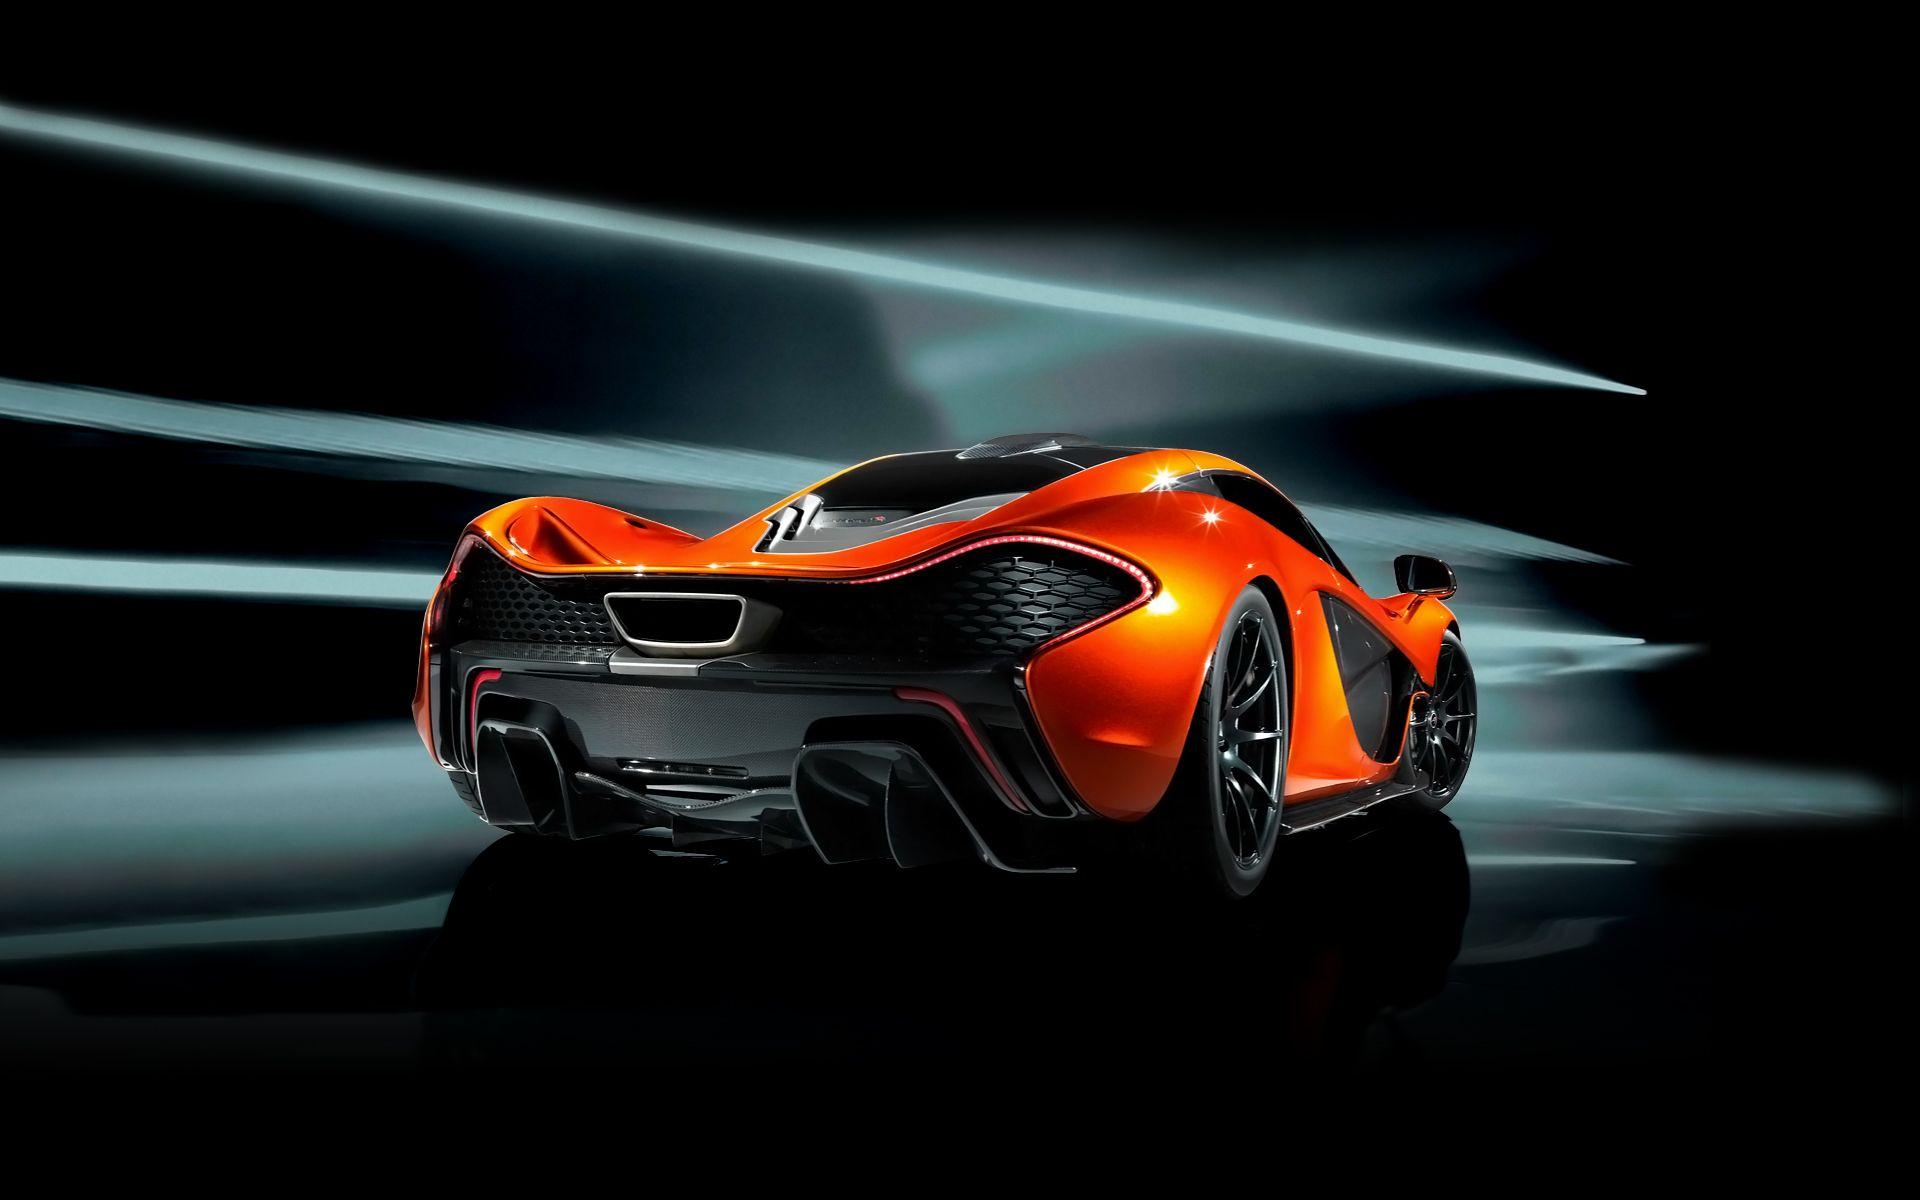 McLaren P1 wallpaper